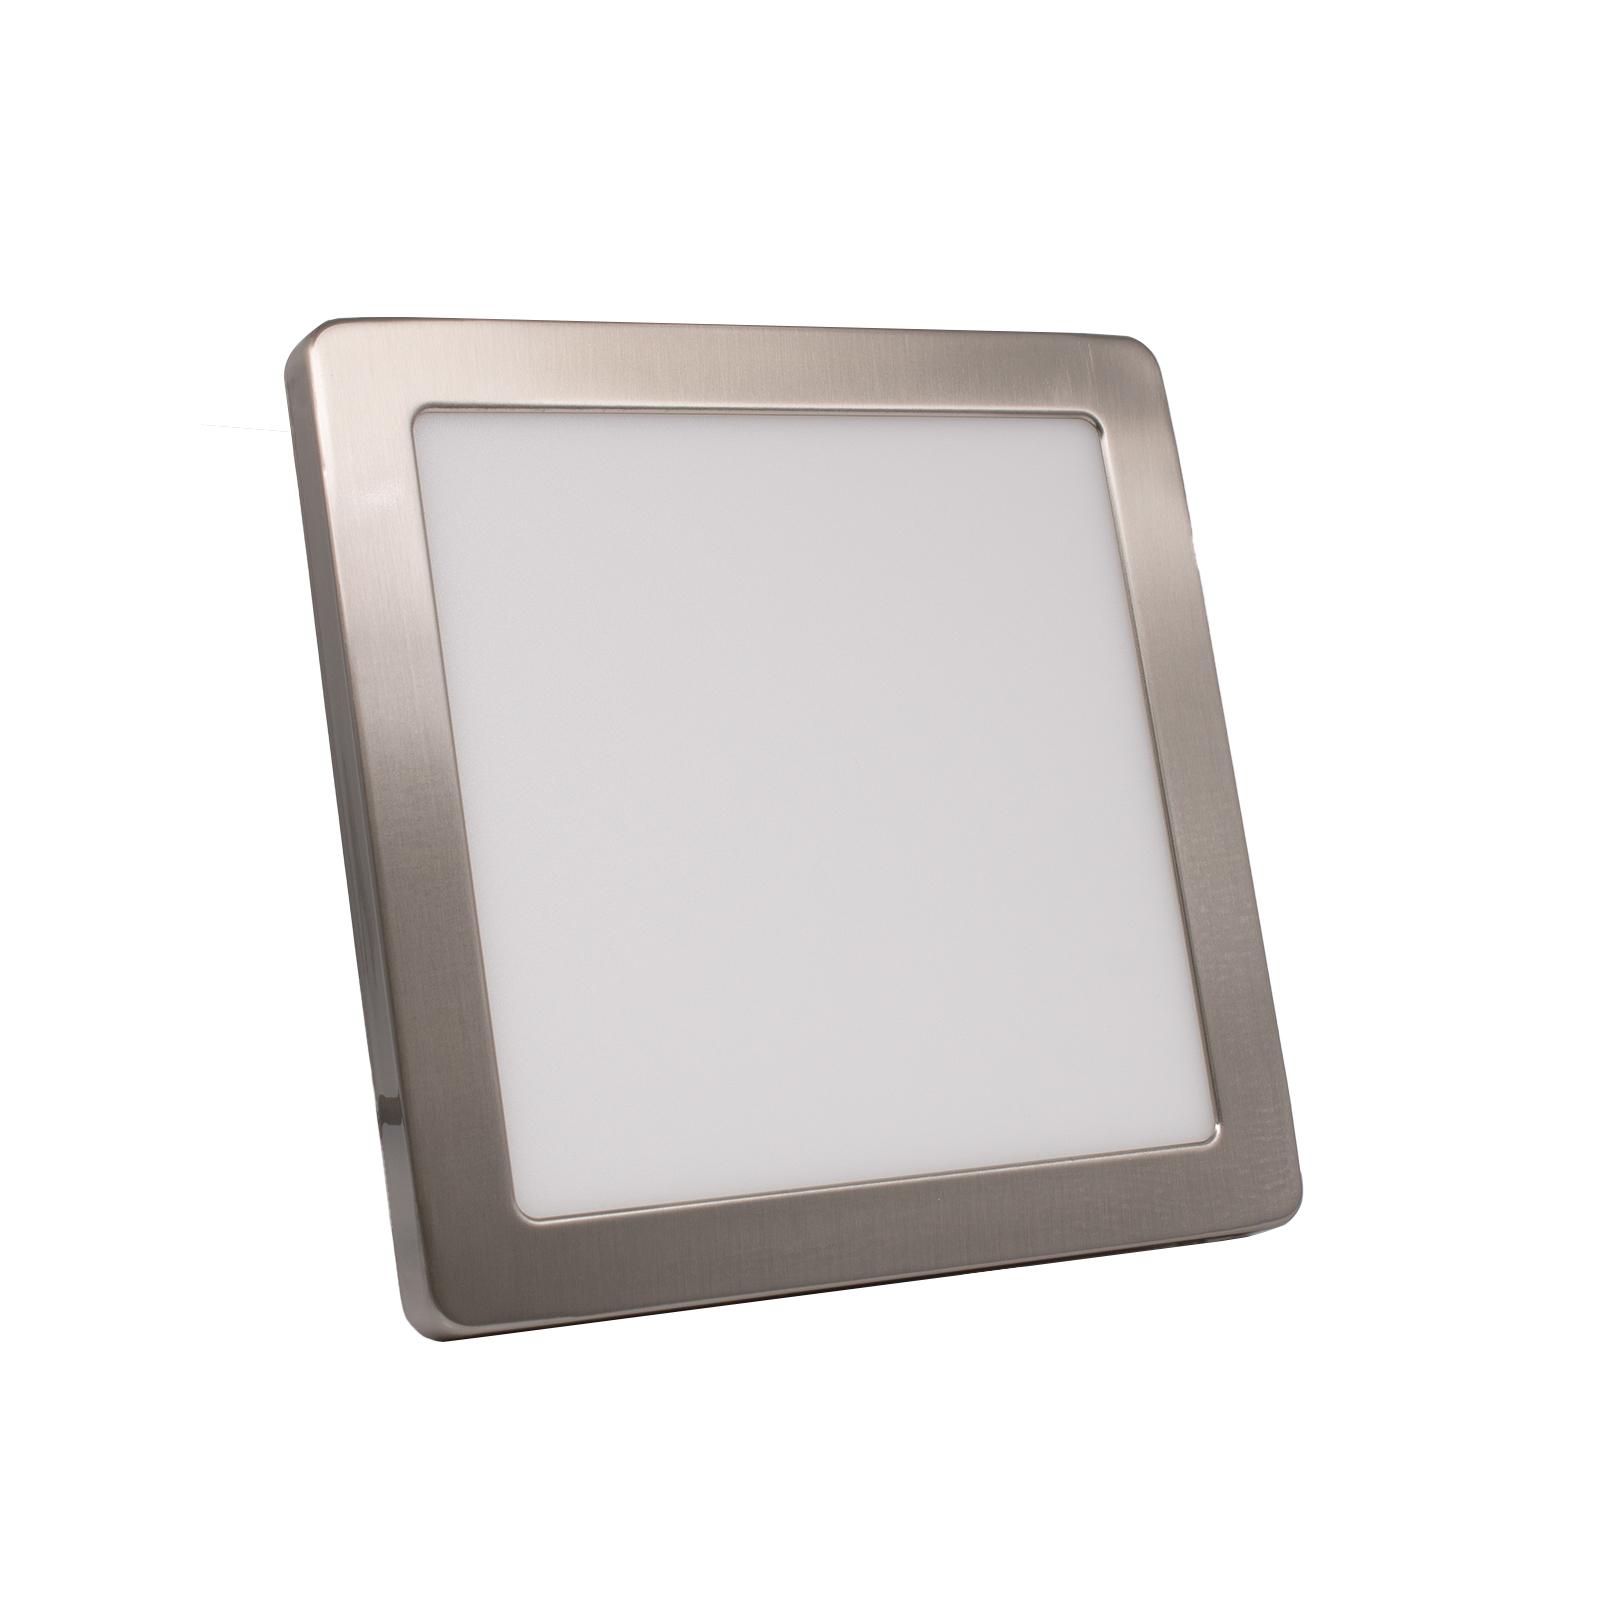 CCT LED Ein-Aufbaustrahler eckig silber 18W 217x217 mit Silber-farbigen Abdeckring